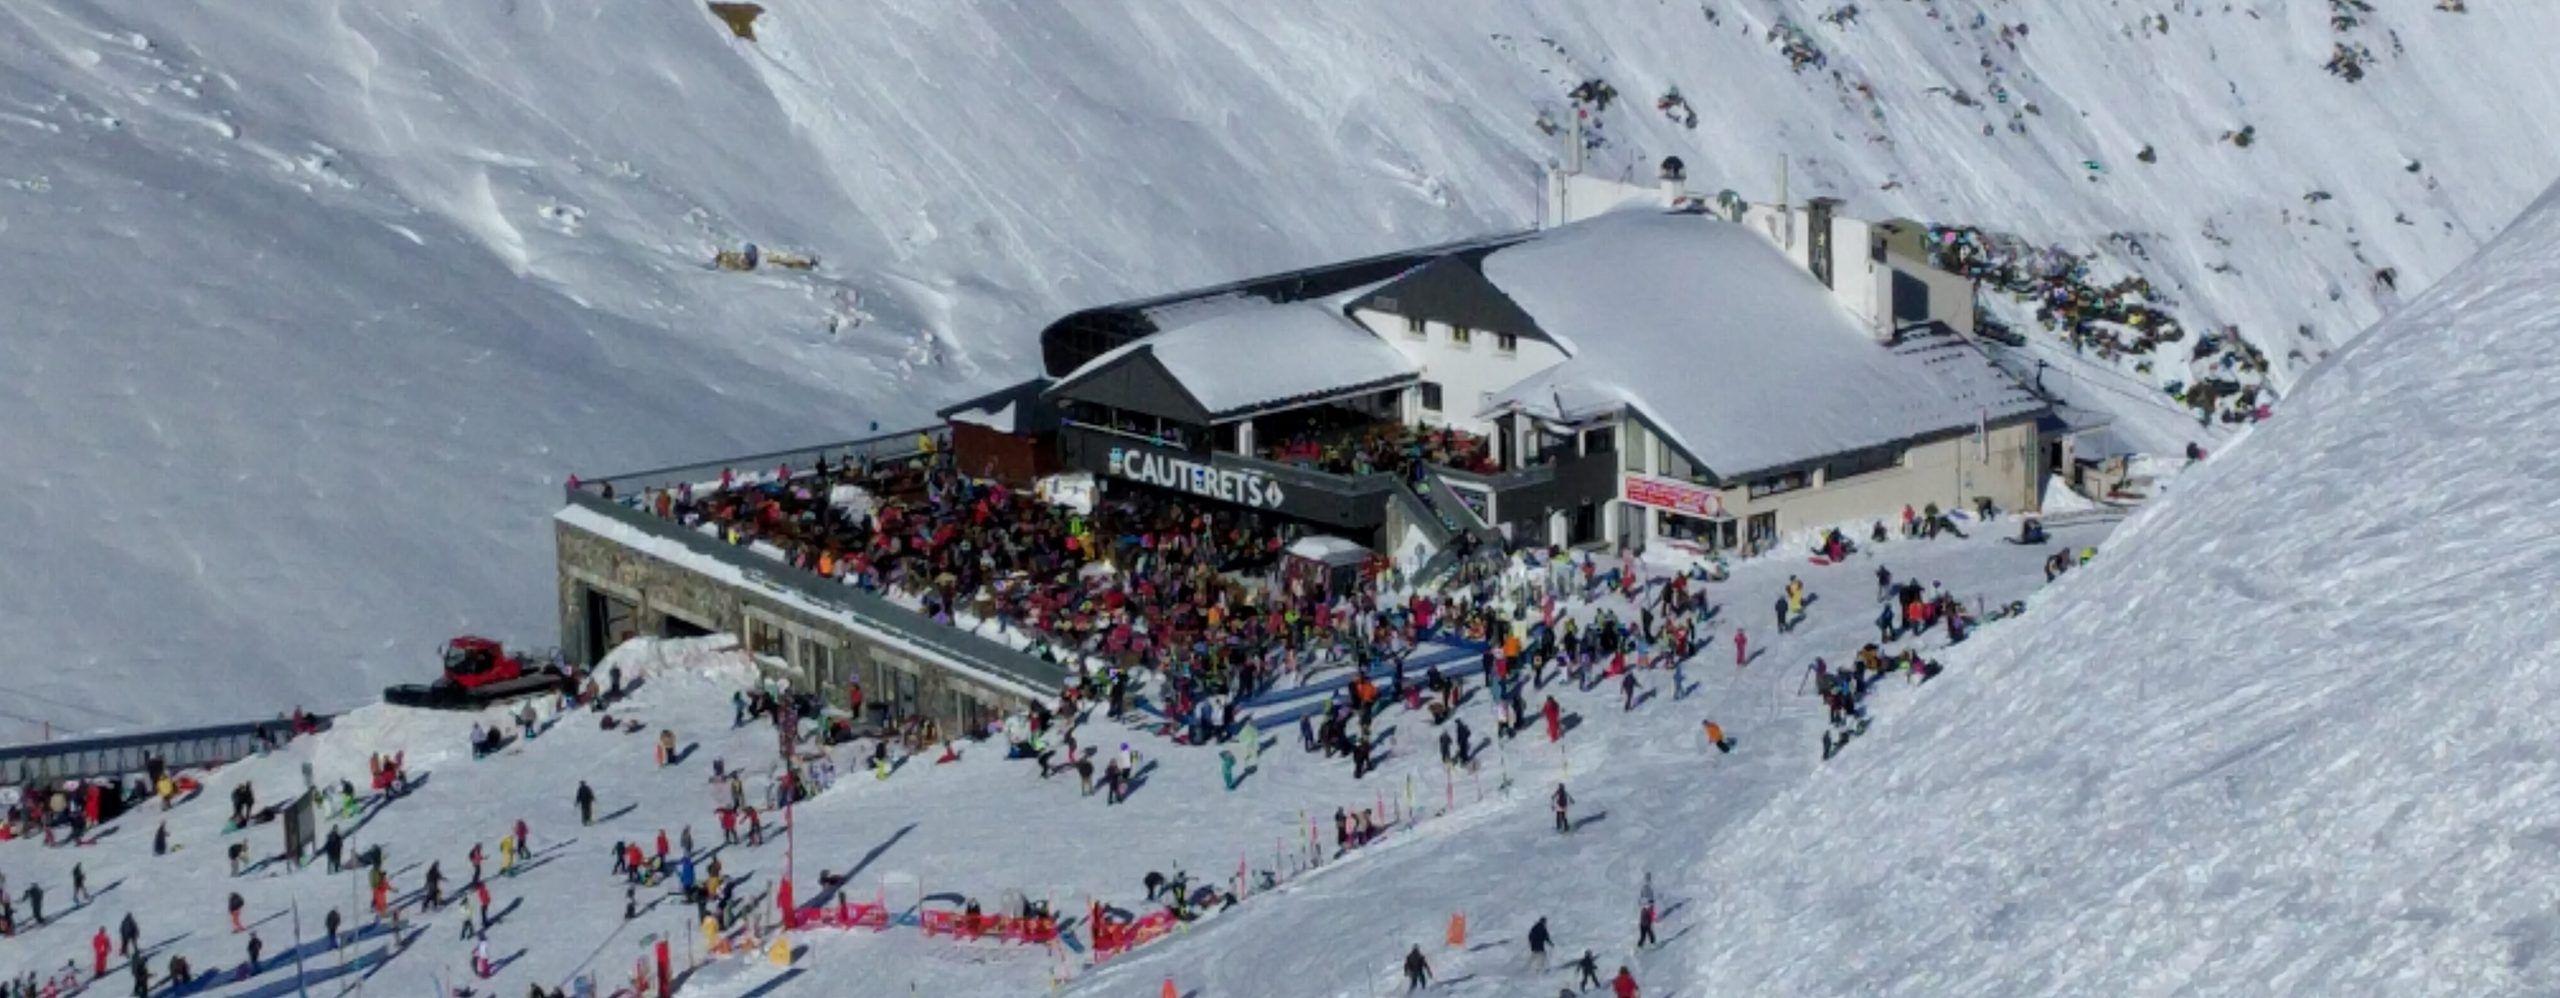 illustration de Skier à Cauterets, Pyrénées